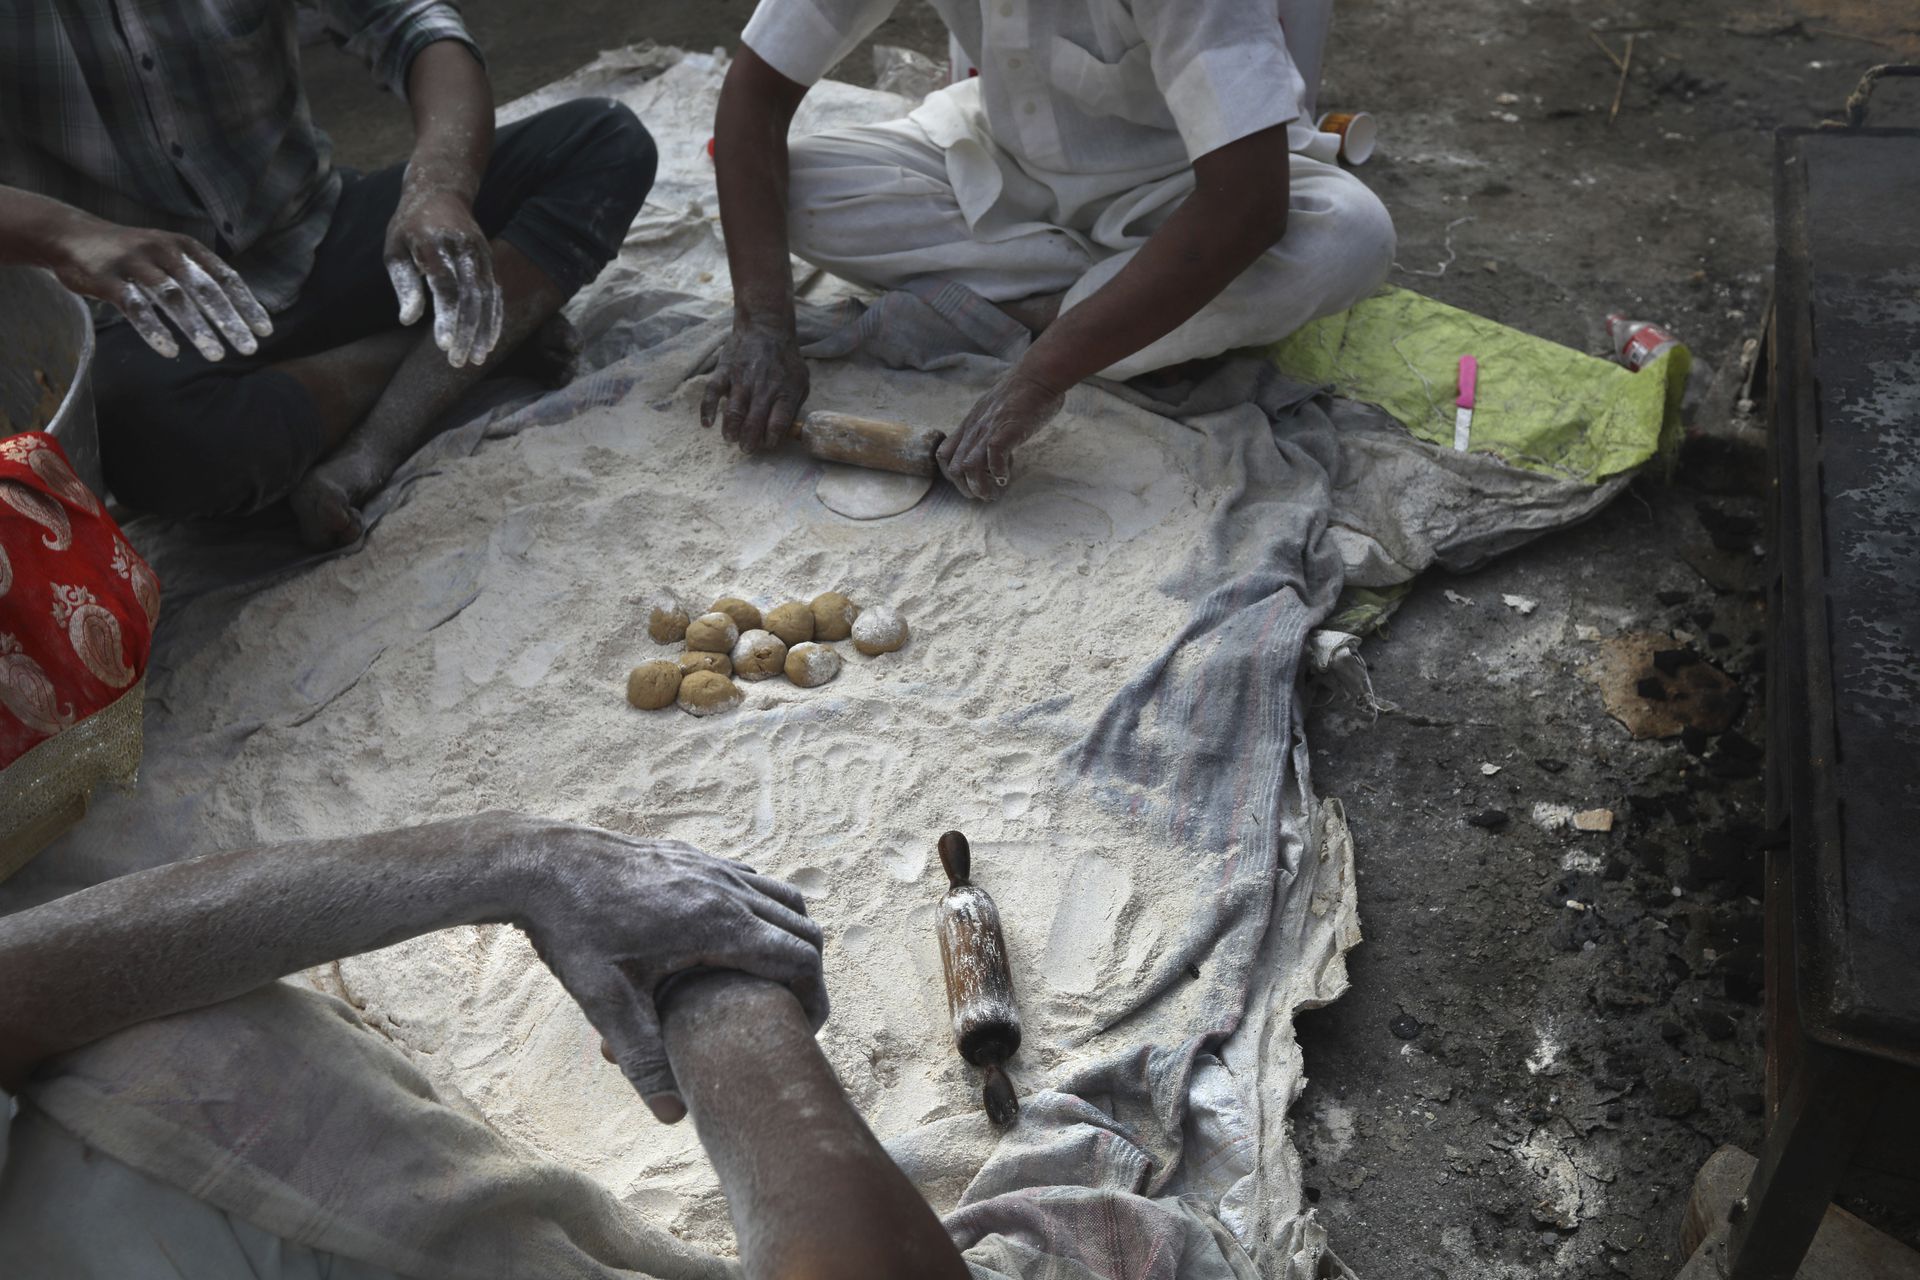 示威者自称携带了一定数量的口粮，很多人现场埋锅造饭。譬如图中的农民就在现场制作印度大饼（roti）。（美联社）